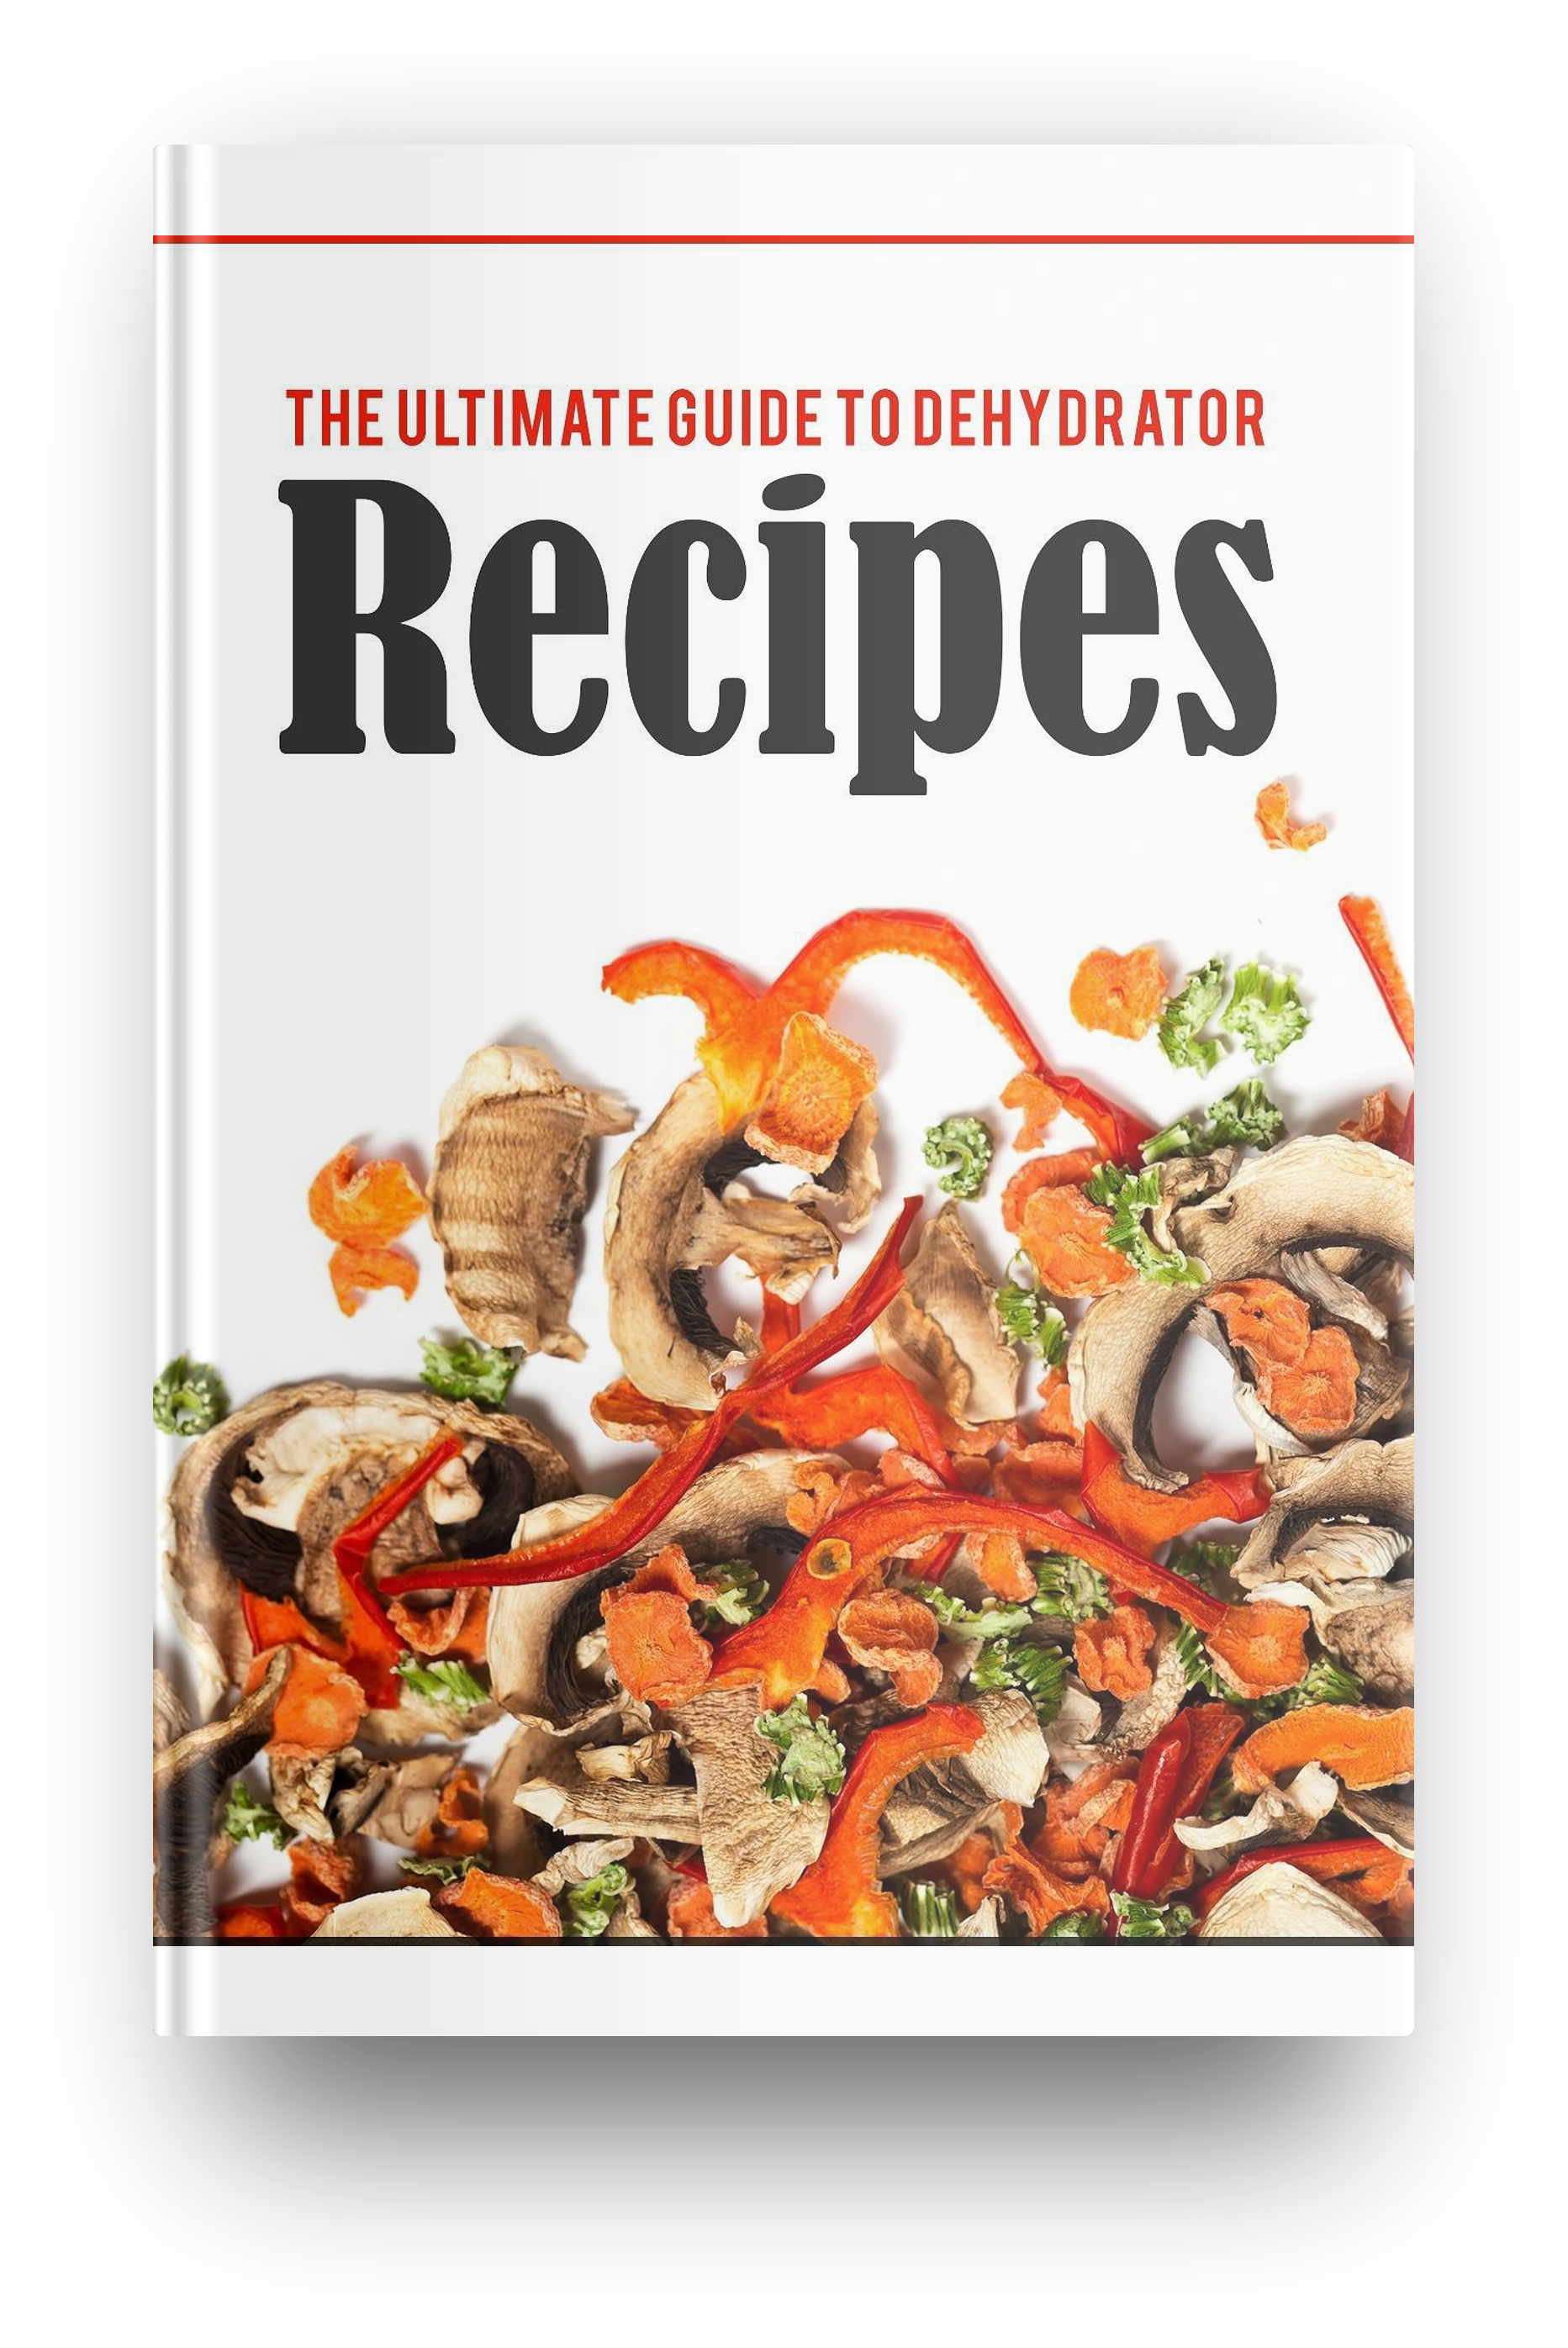 the ultimate dehydrator cookbook pdf